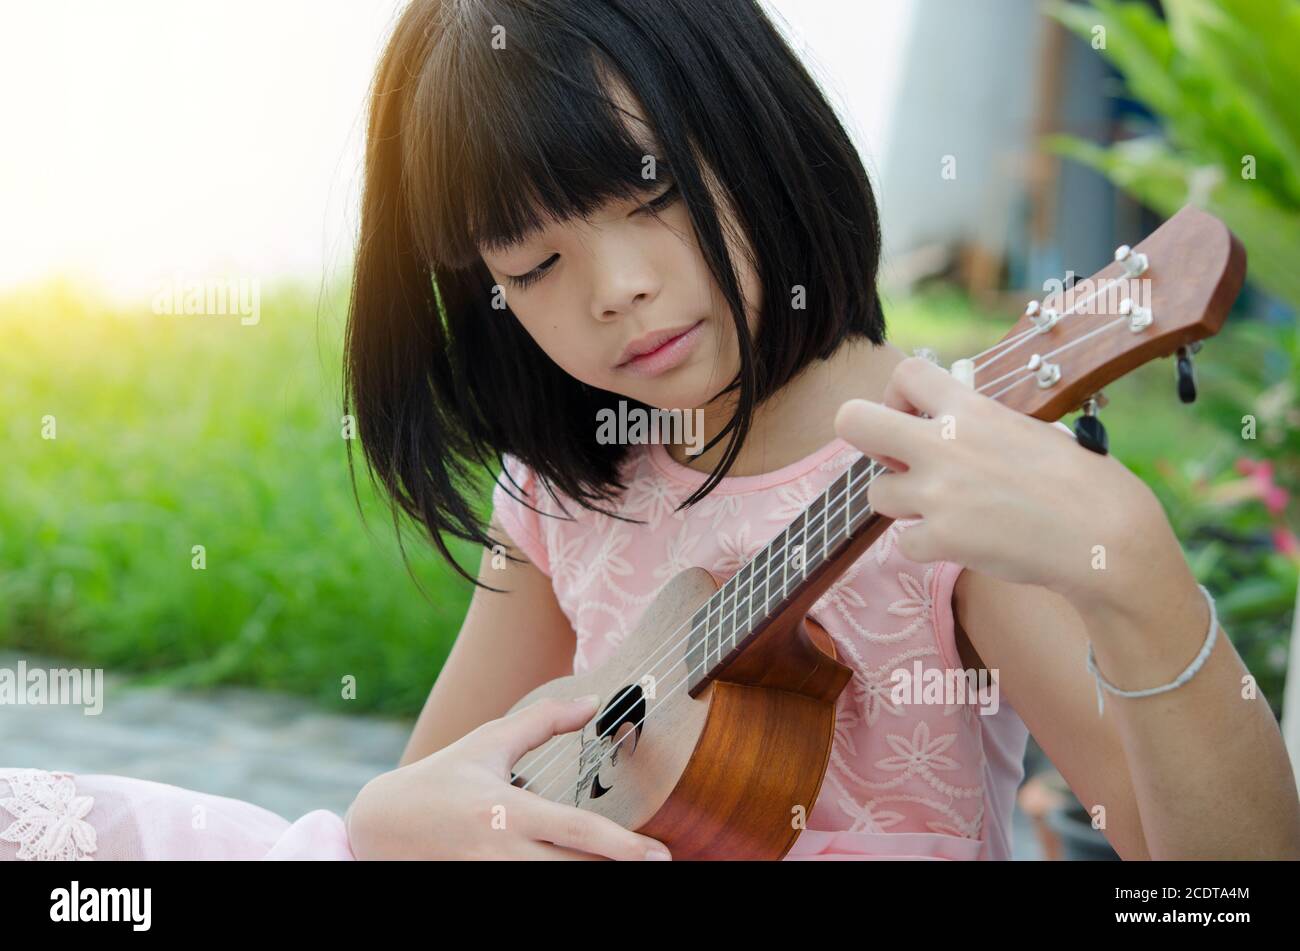 Asian girl playing the ukulele Stock Photo